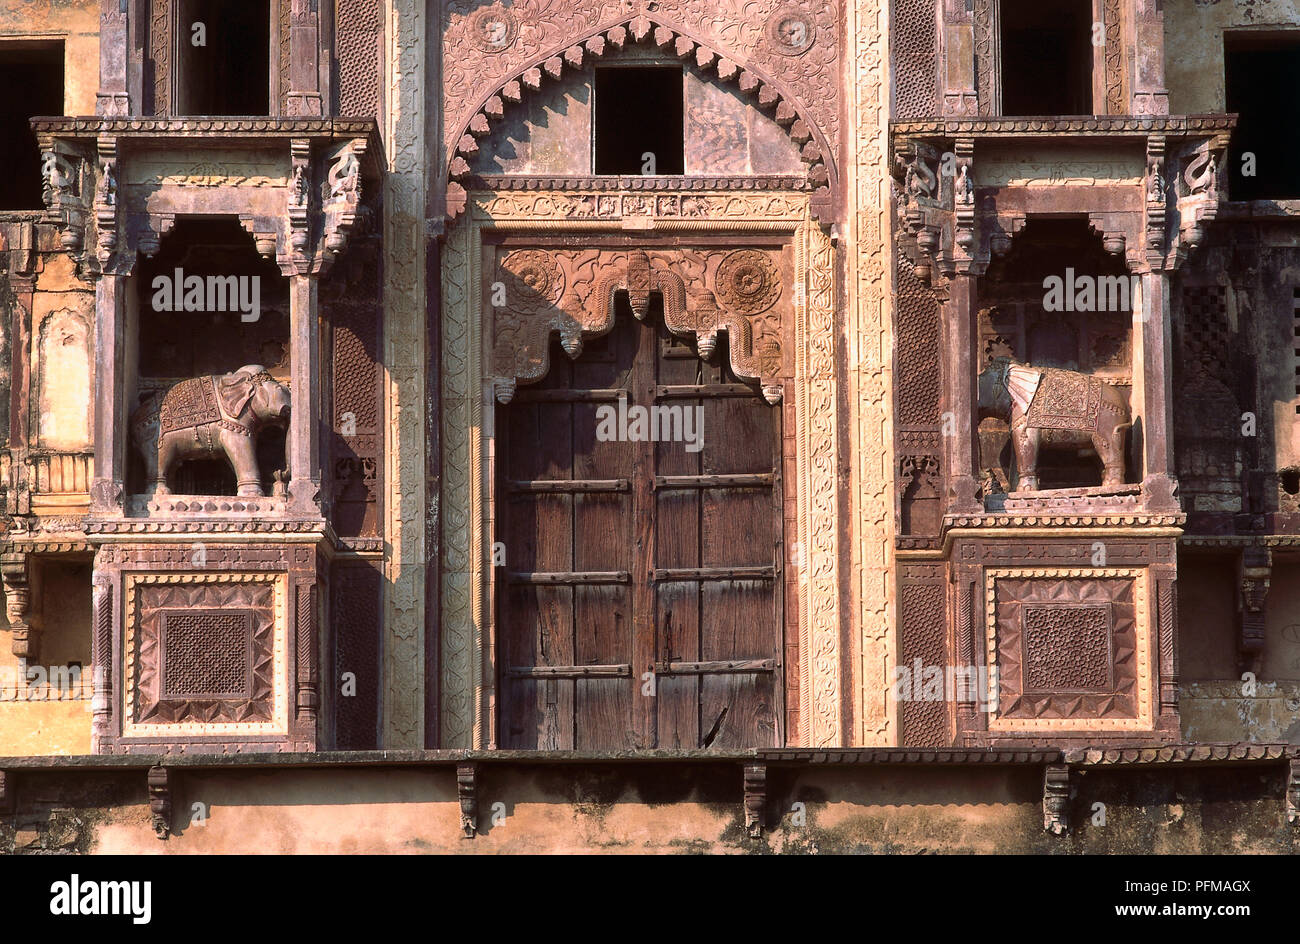 Indien, Jahangiri Mahal, Rajput Bundela Architektur, eindrucksvoll gesäumten Eingang Gateway, roter Sandstein, von Stein Elefanten flankiert. Stockfoto